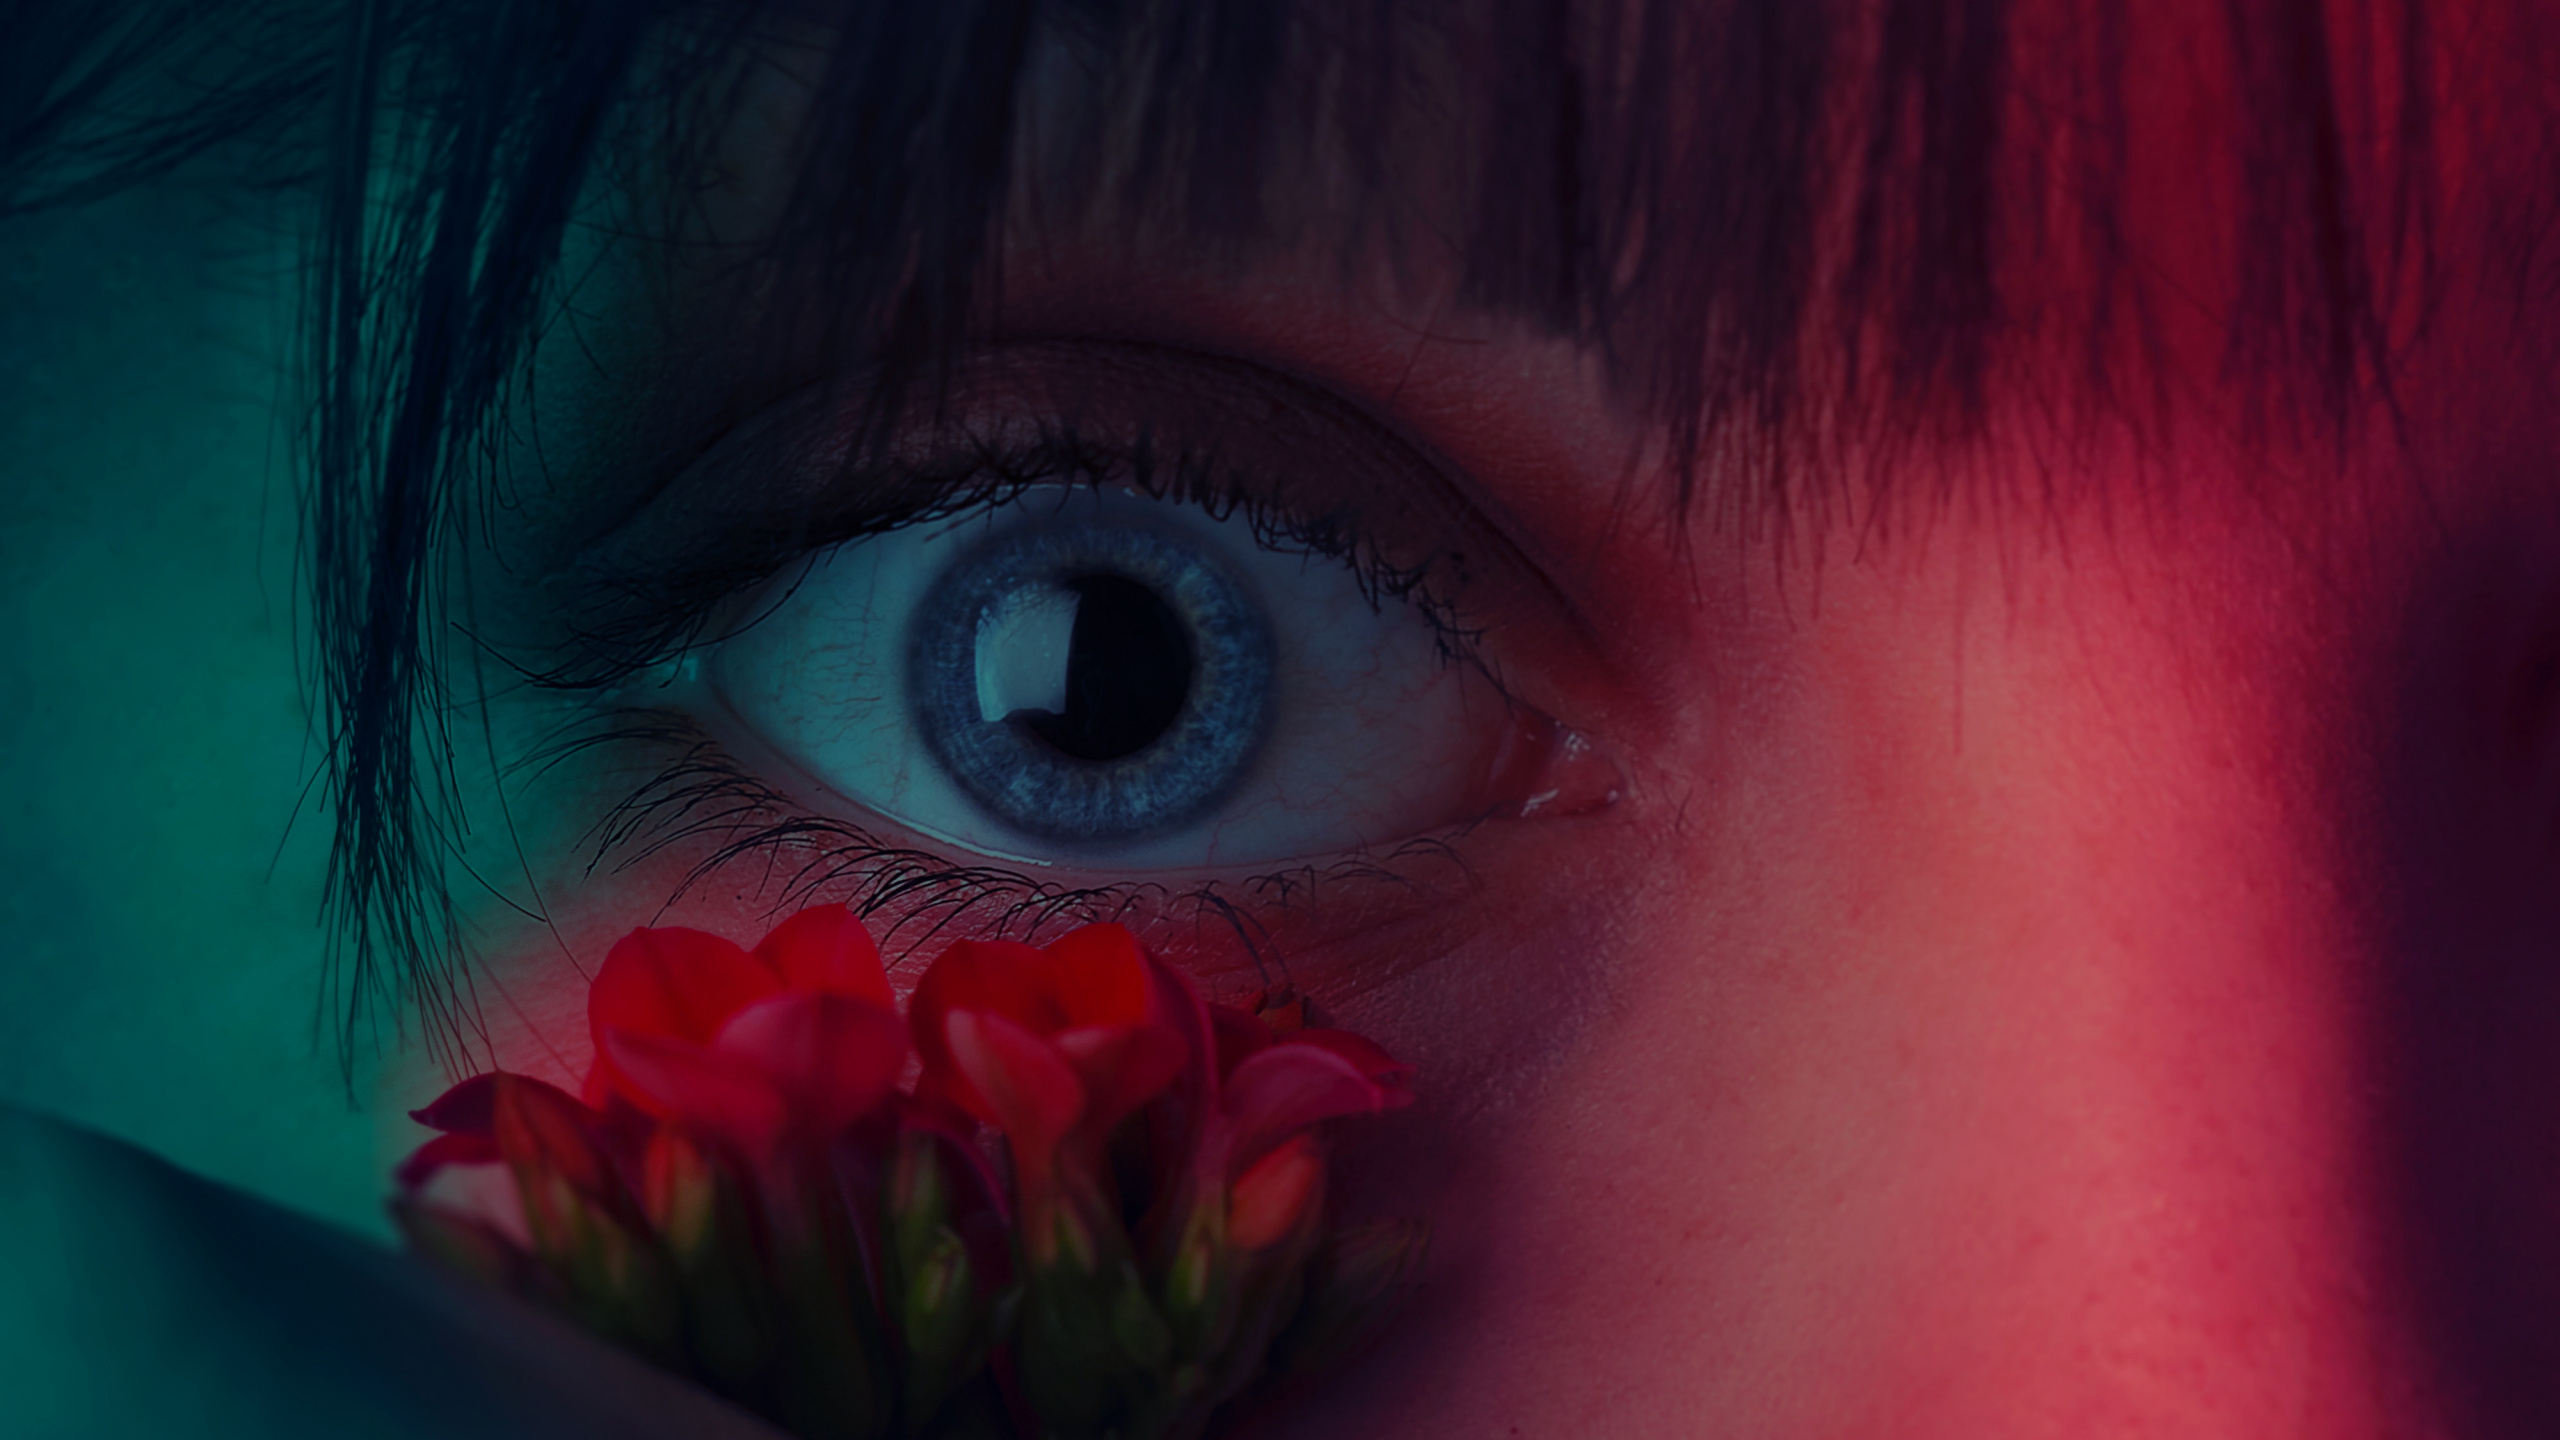 Mädchen Mit Roter Blume im Gesicht. Wallpaper in 2560x1440 Resolution